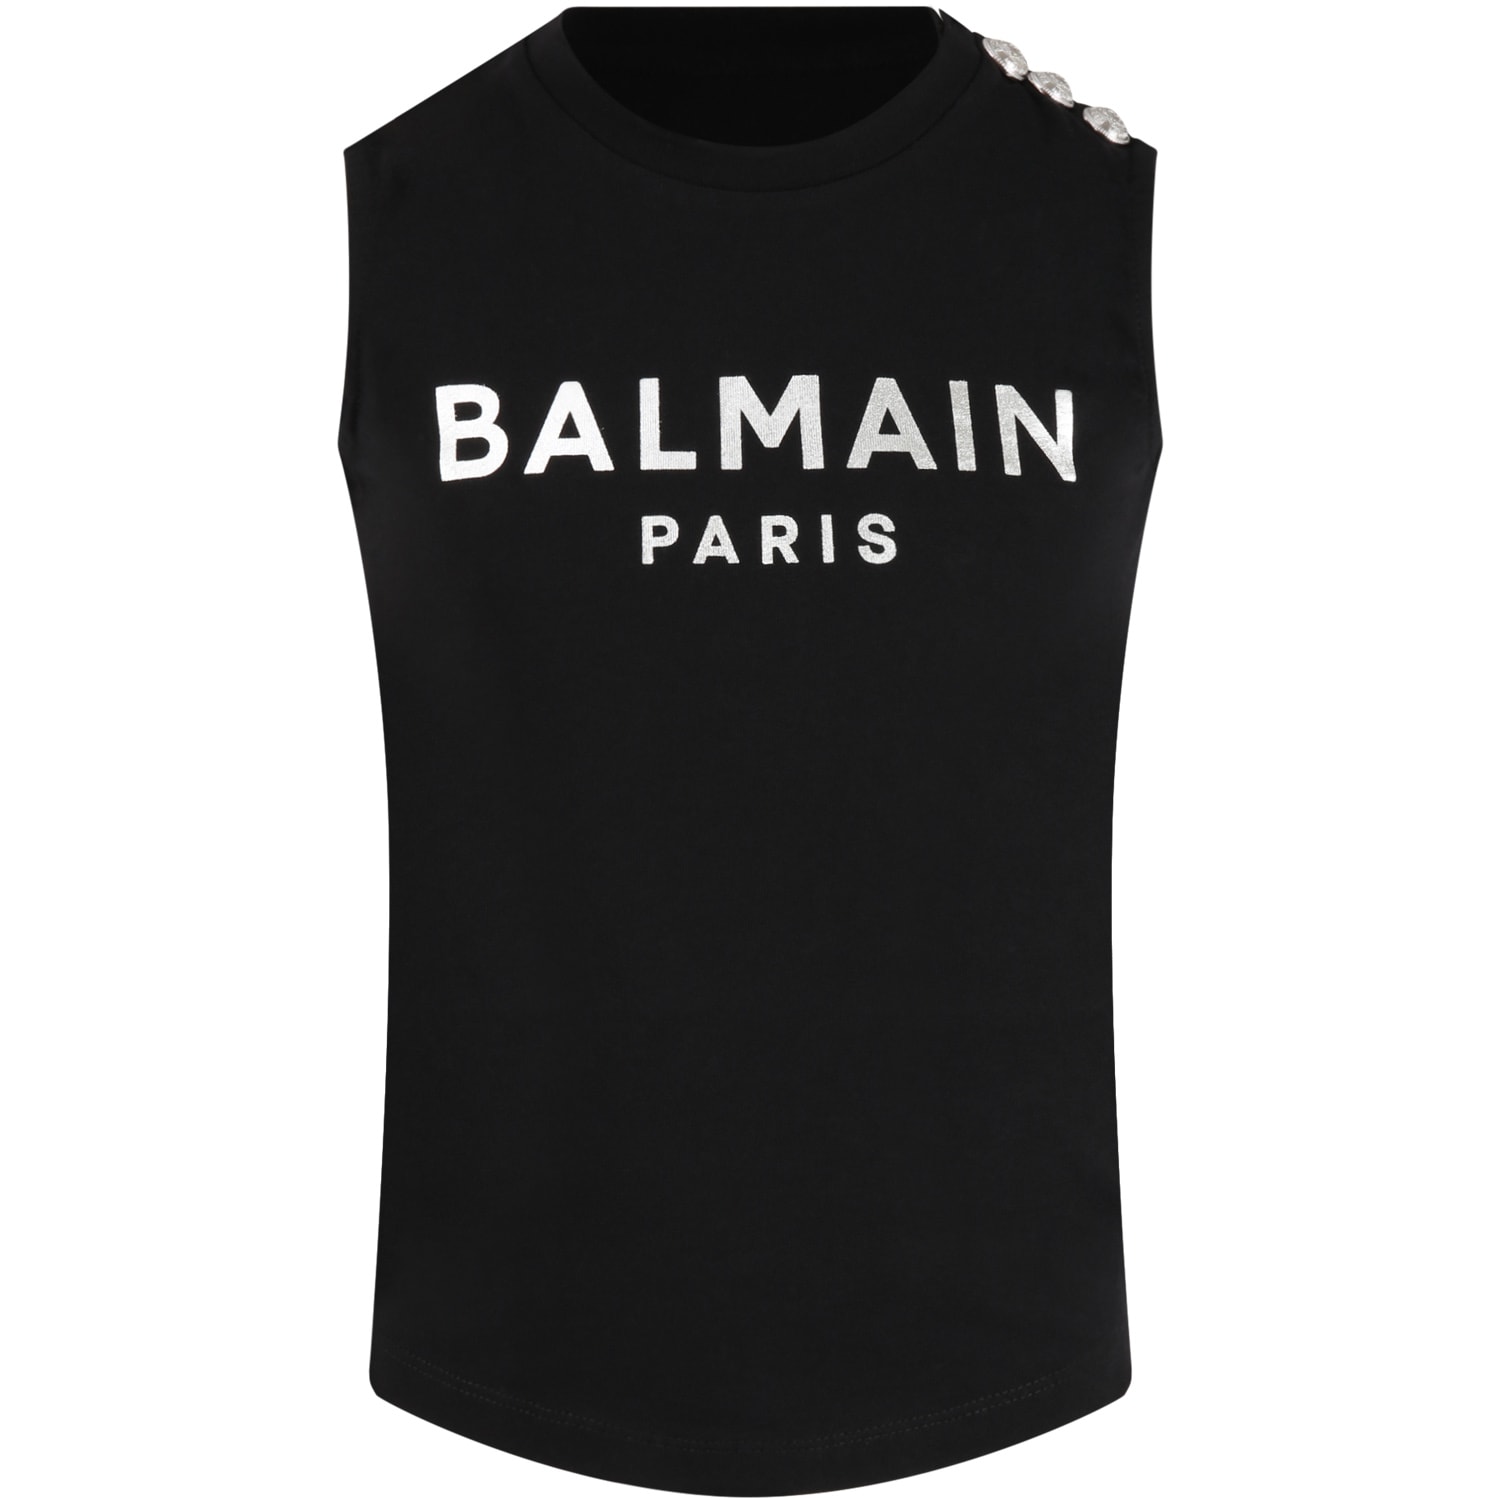 Balmain Black Tank Top For Girl With Logo